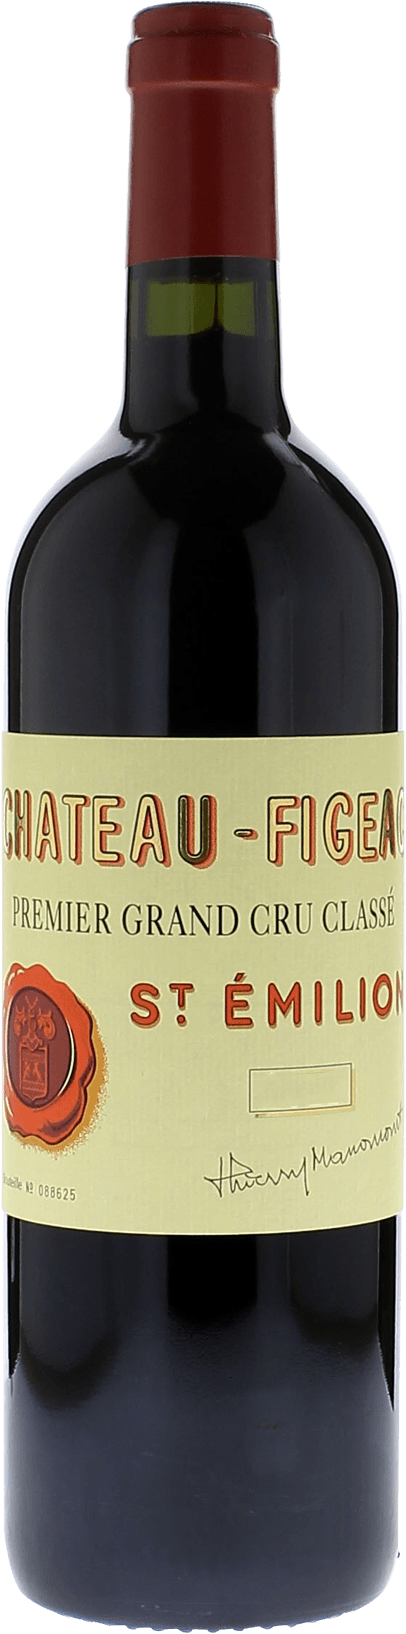 Figeac saint emilion 2000 1er Grand cru B class Saint-Emilion, Bordeaux rouge